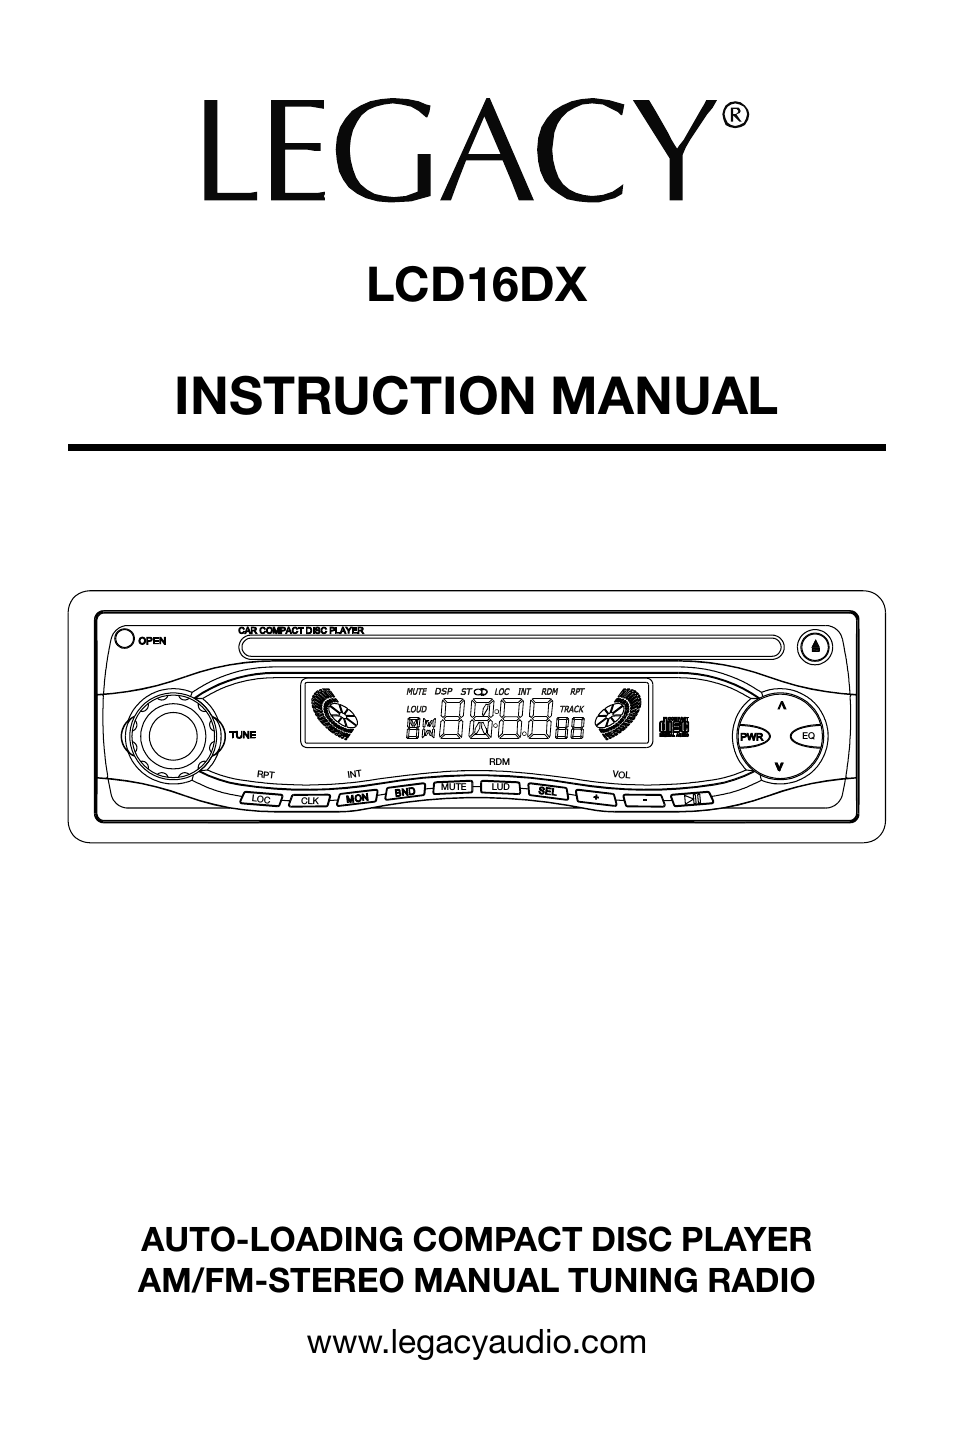 LCD16DX